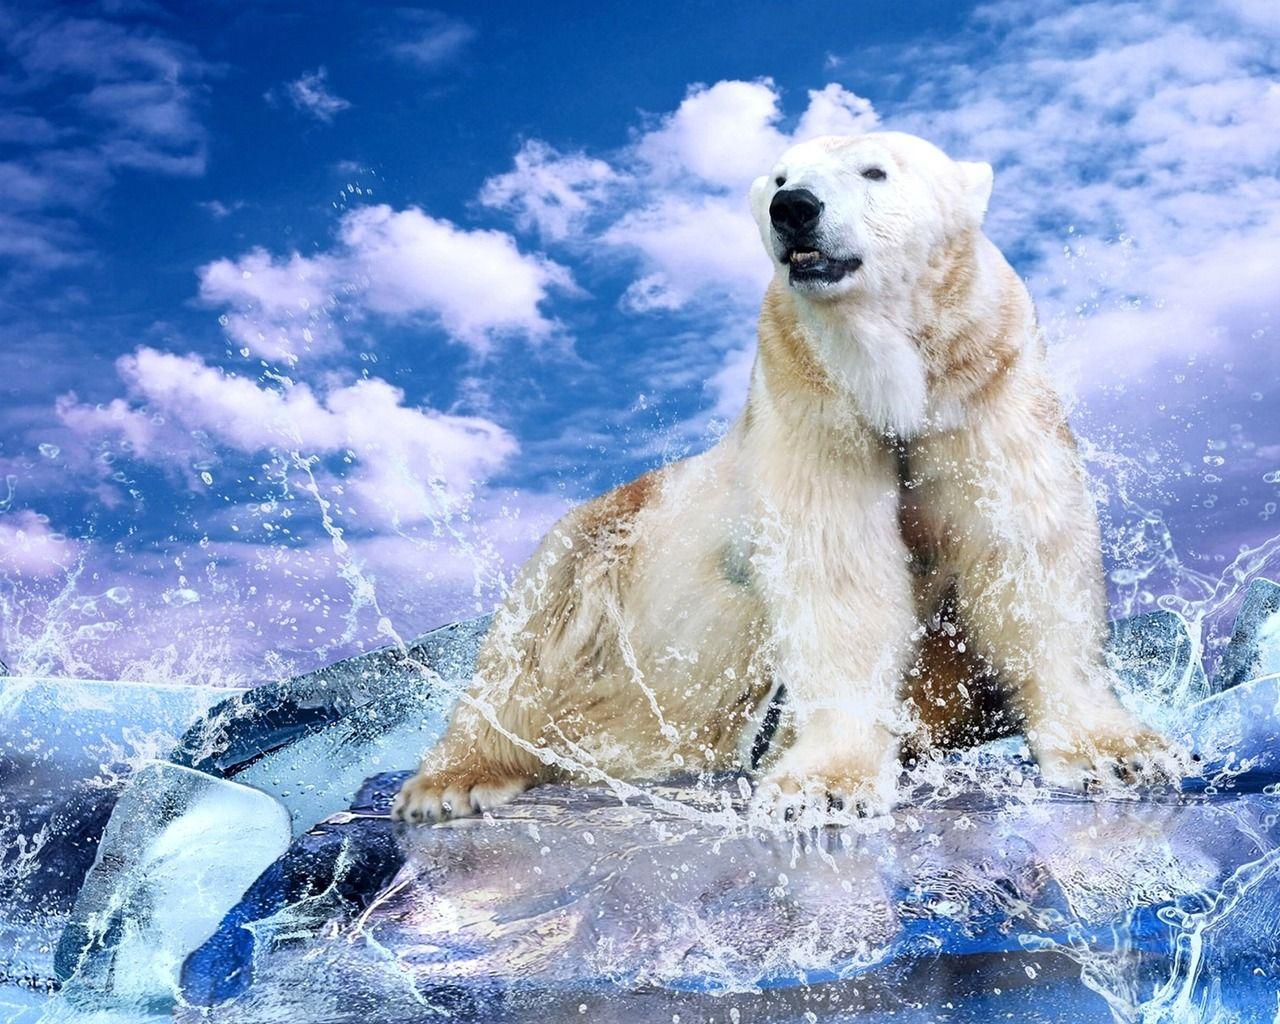 Download wallpaper: white polar bear, download photo, desktop wallpaper